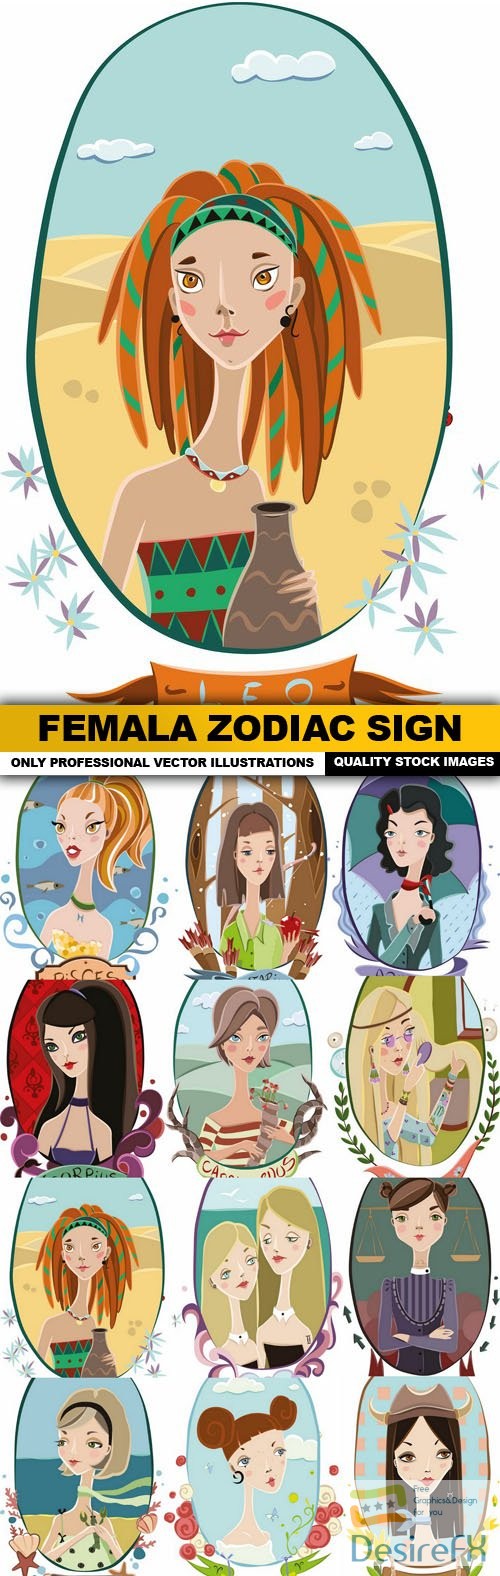 Femala Zodiac Sign - 12 Vector